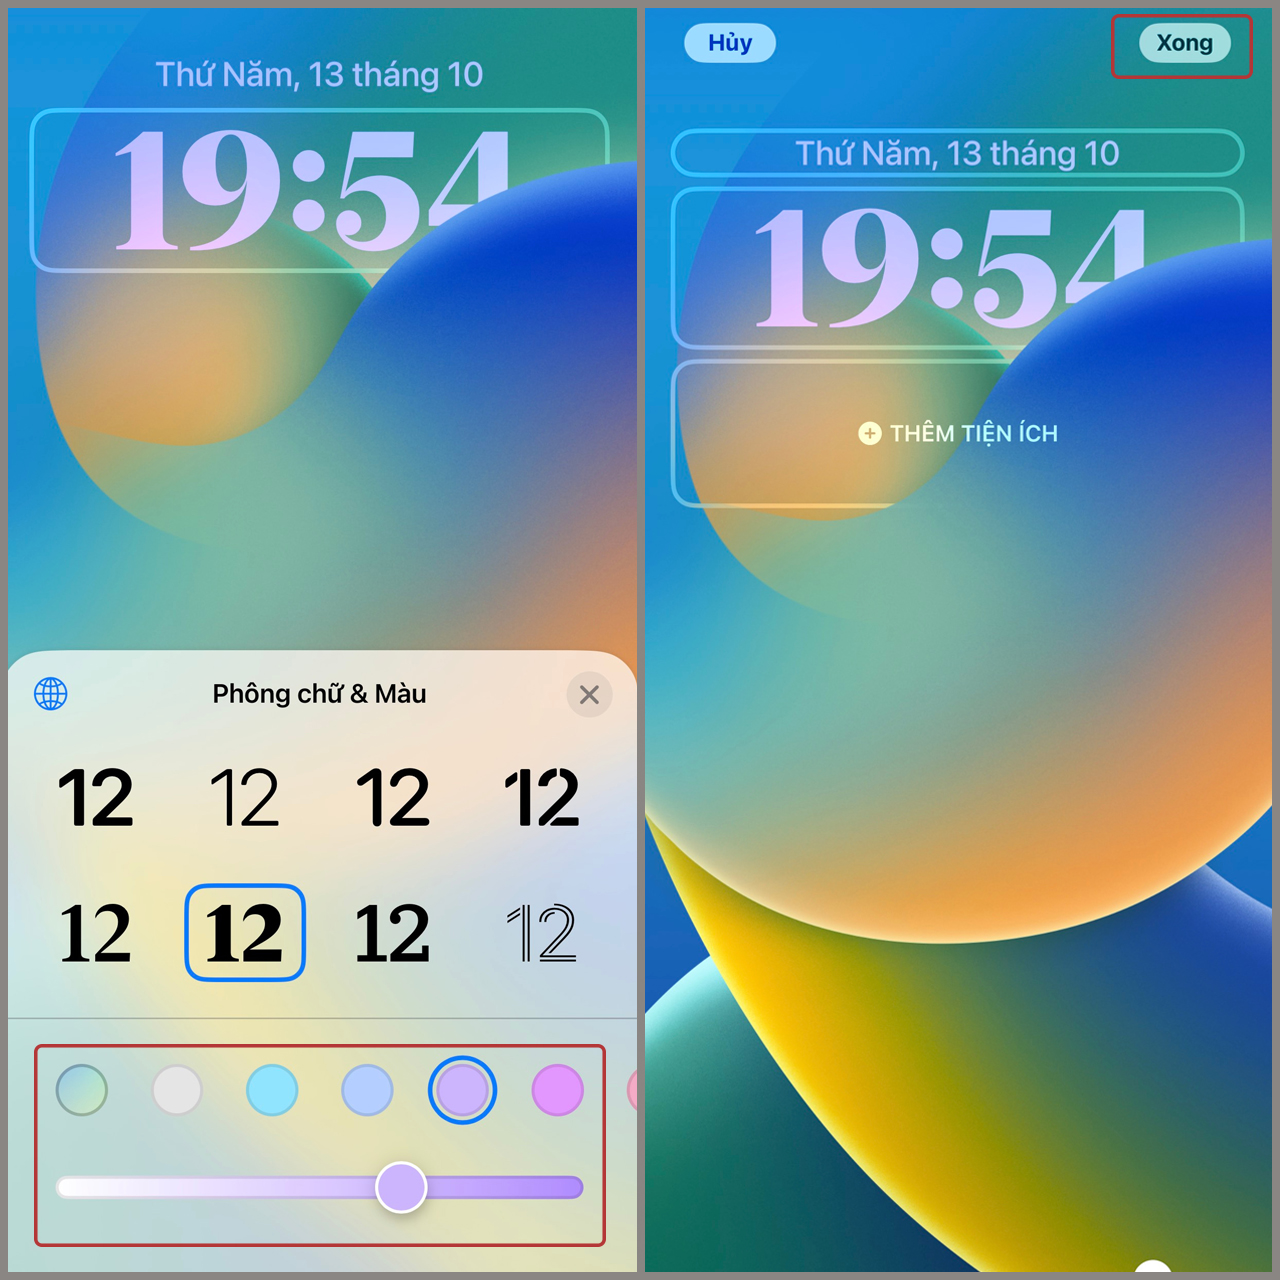 Thử nghiệm iOS 16 mới đến từ Apple đã có tính năng đổi kiểu đồng hồ theo phong cách yêu thích của bạn. Bạn có thể thay đổi và tùy chỉnh màu sắc, chữ số và font chữ để tạo nên một kiểu đồng hồ độc đáo. Hãy xem hình ảnh để cùng khám phá tính năng mới này nhé!